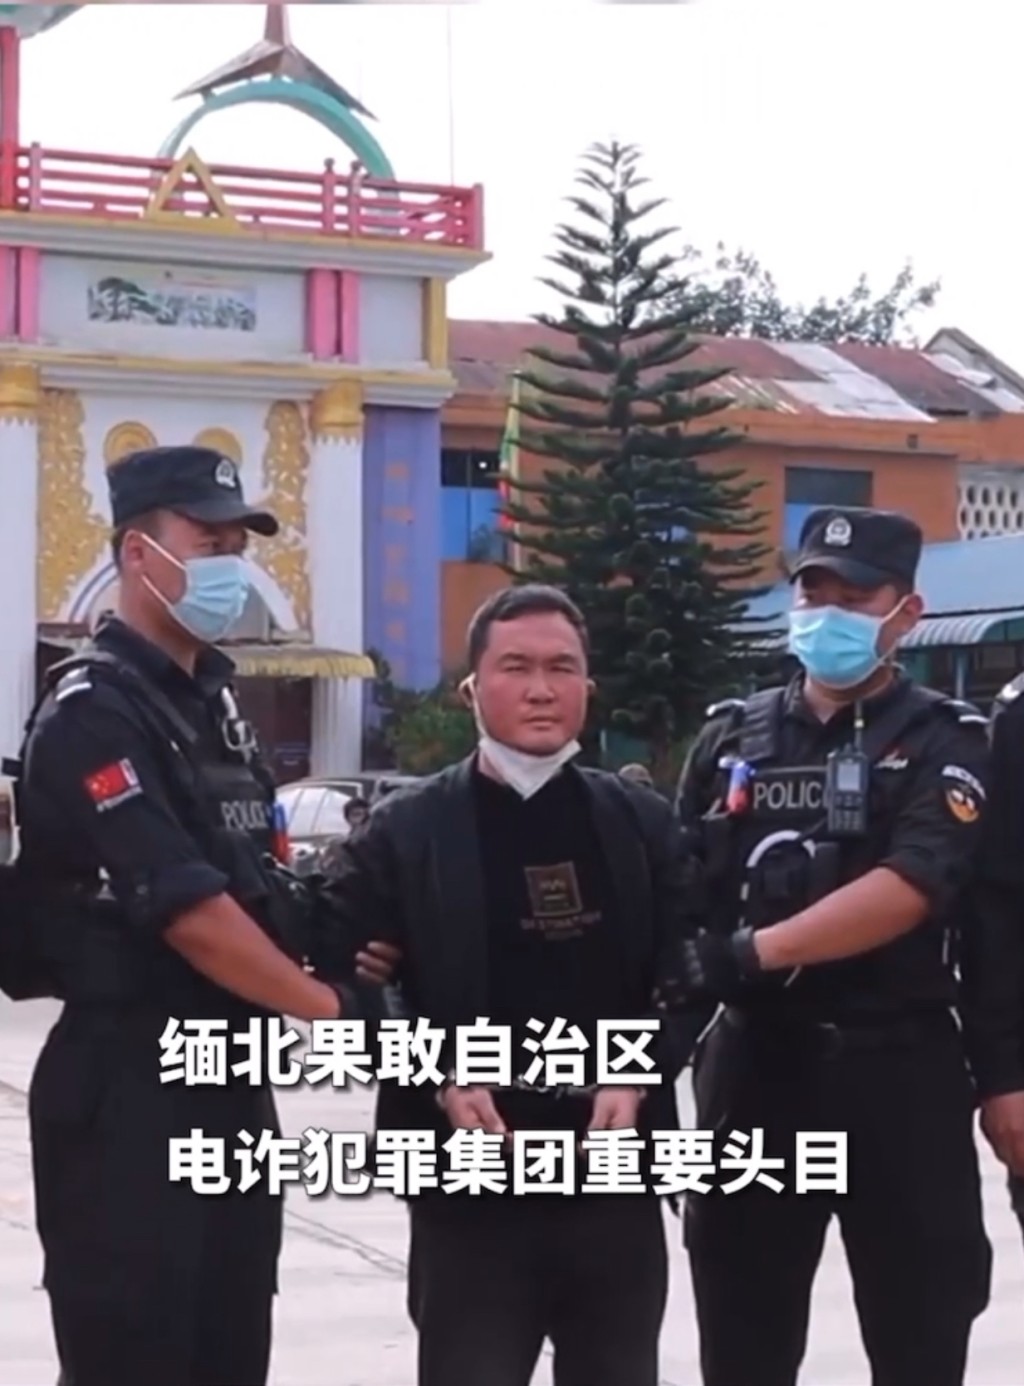 中国特警接收明国平。 央视影片截图